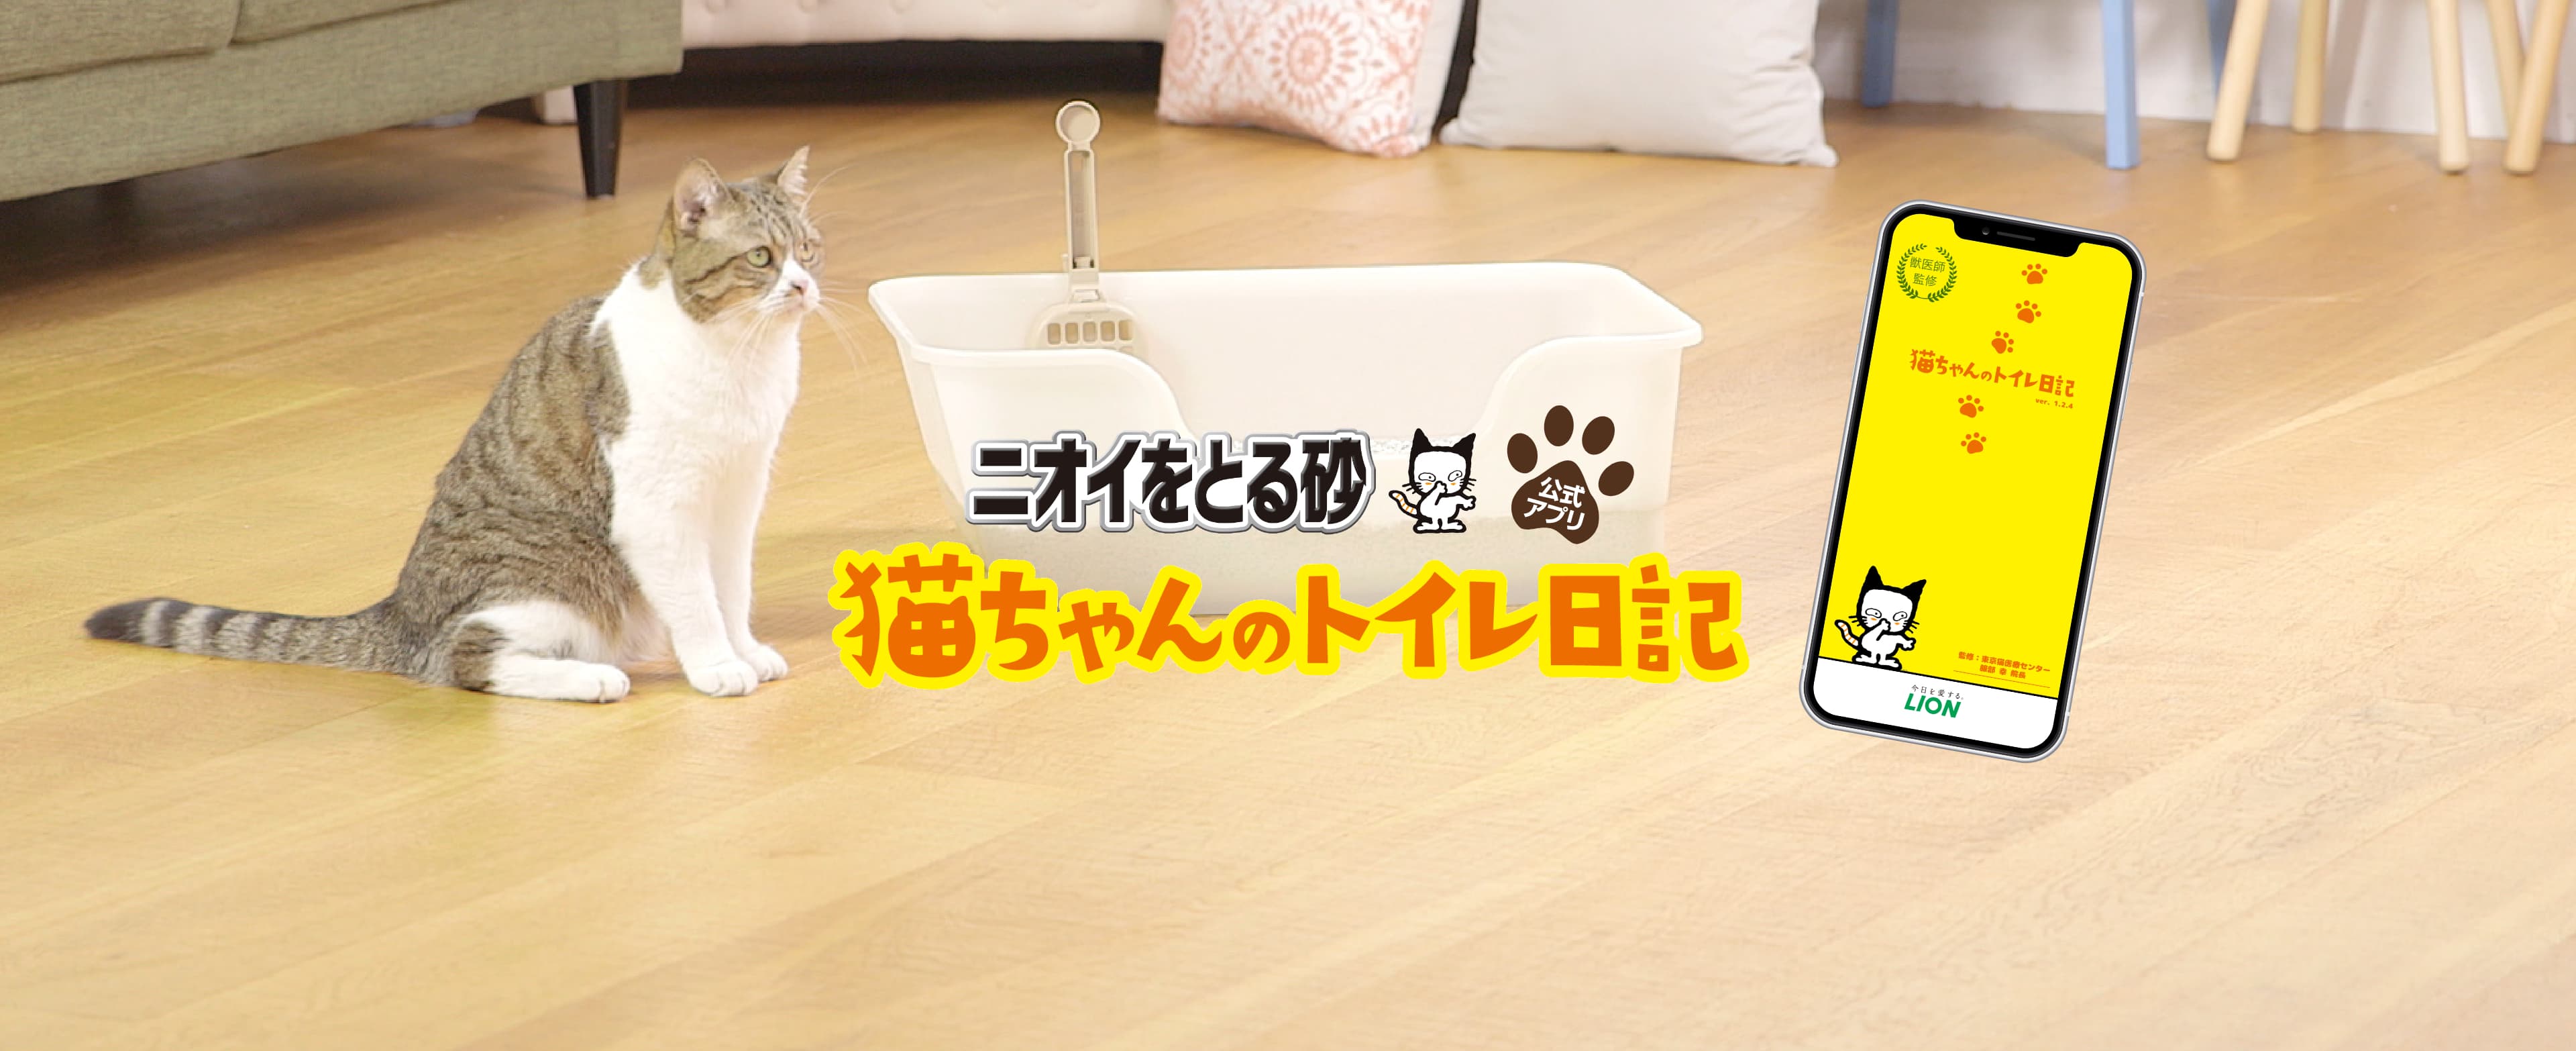 ニオイをとる砂公式アプリ「猫ちゃんのトイレ日記」